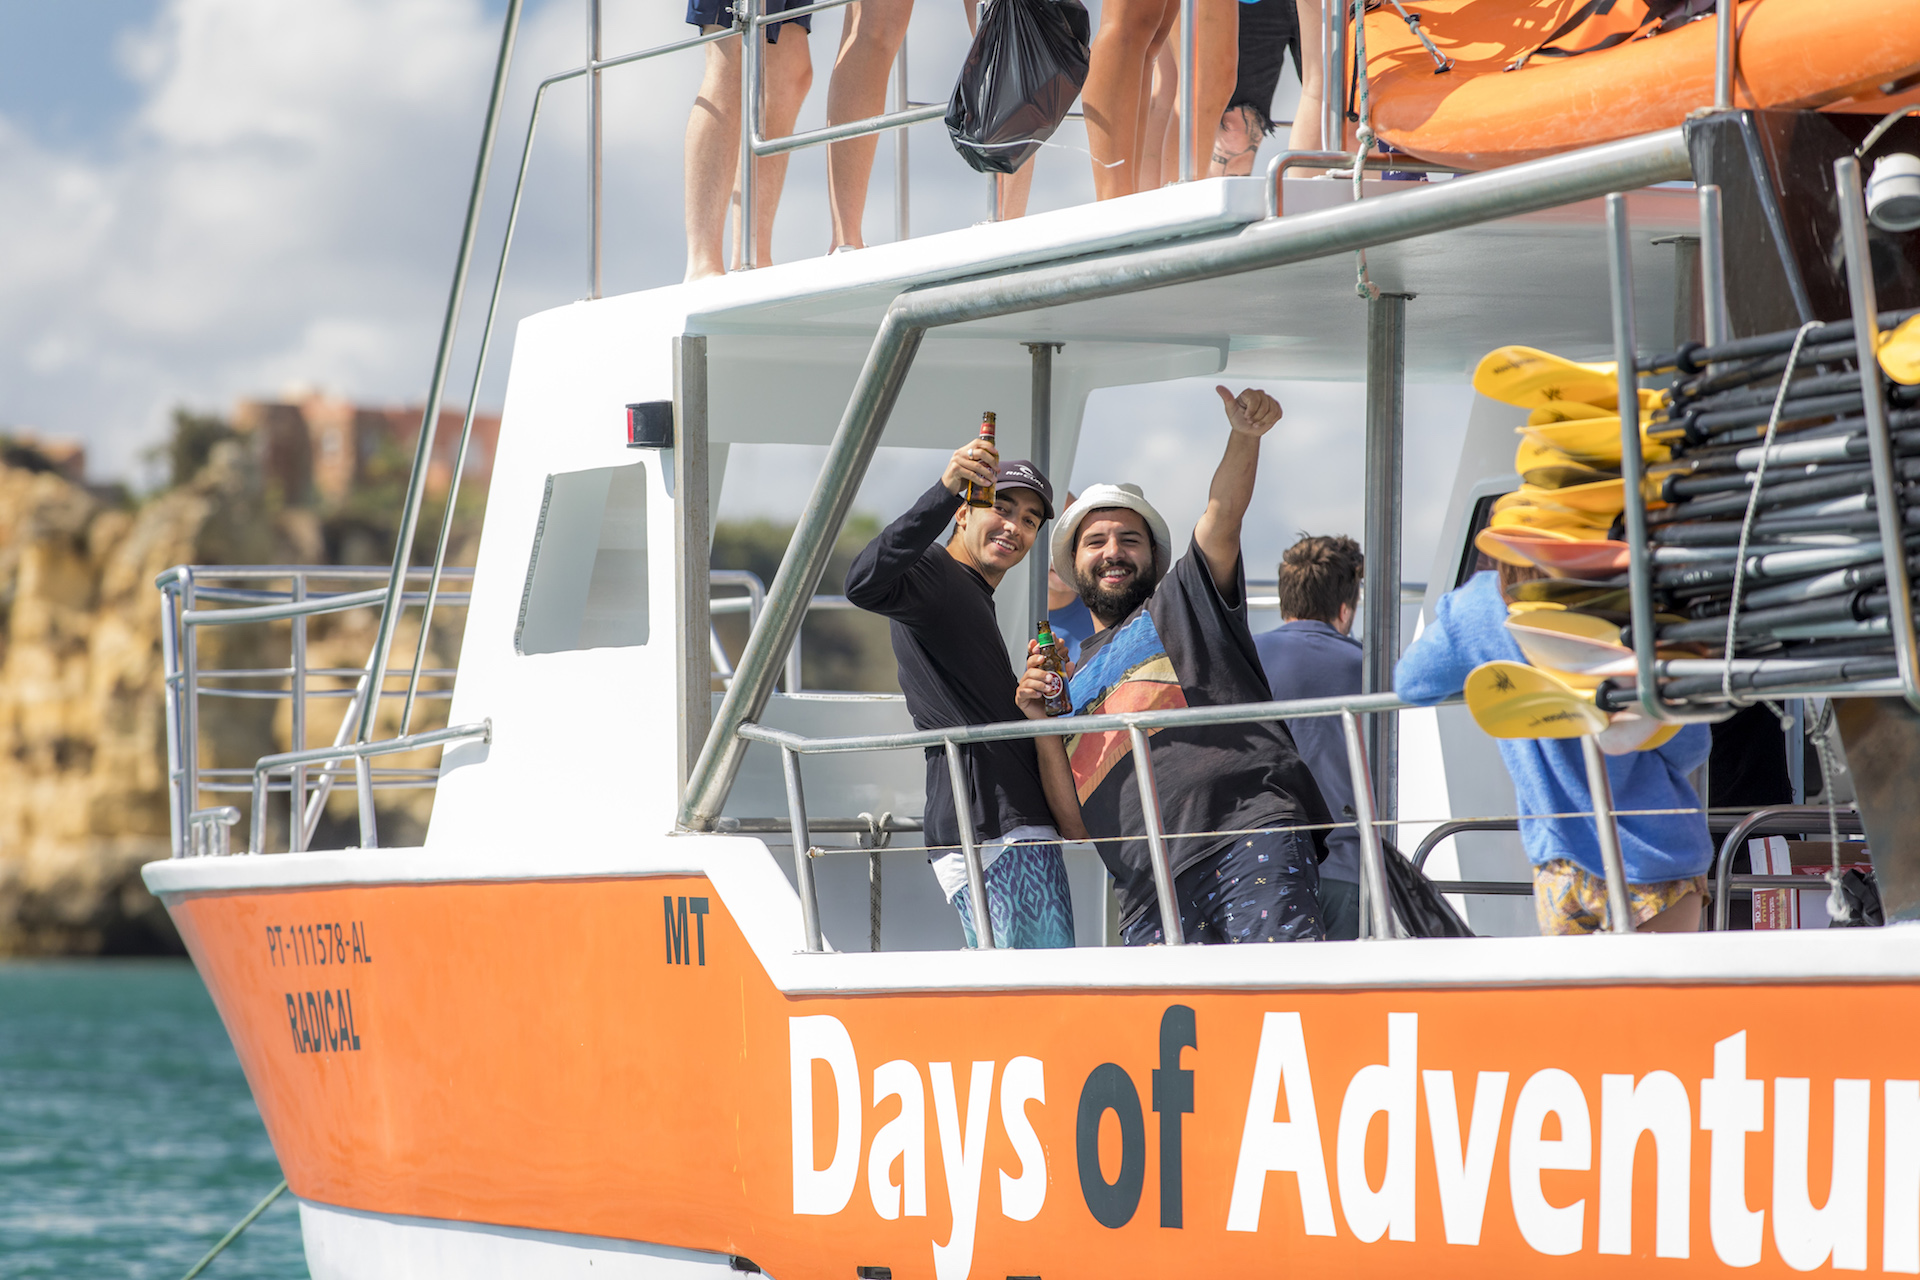 Algarve Boat Festival